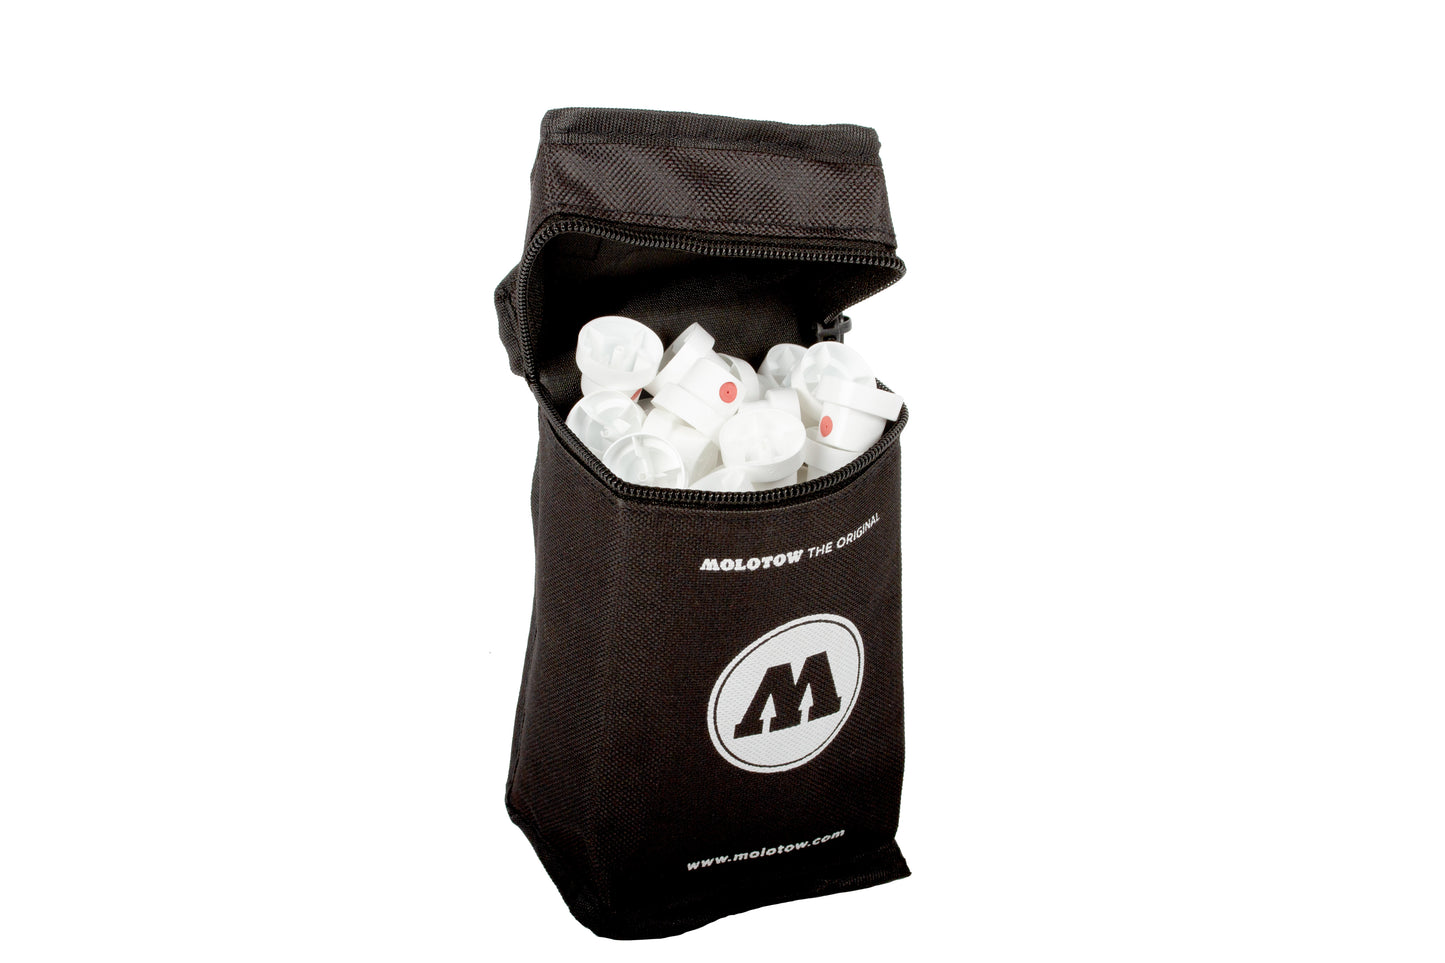 Molotow Portable Marker Bag